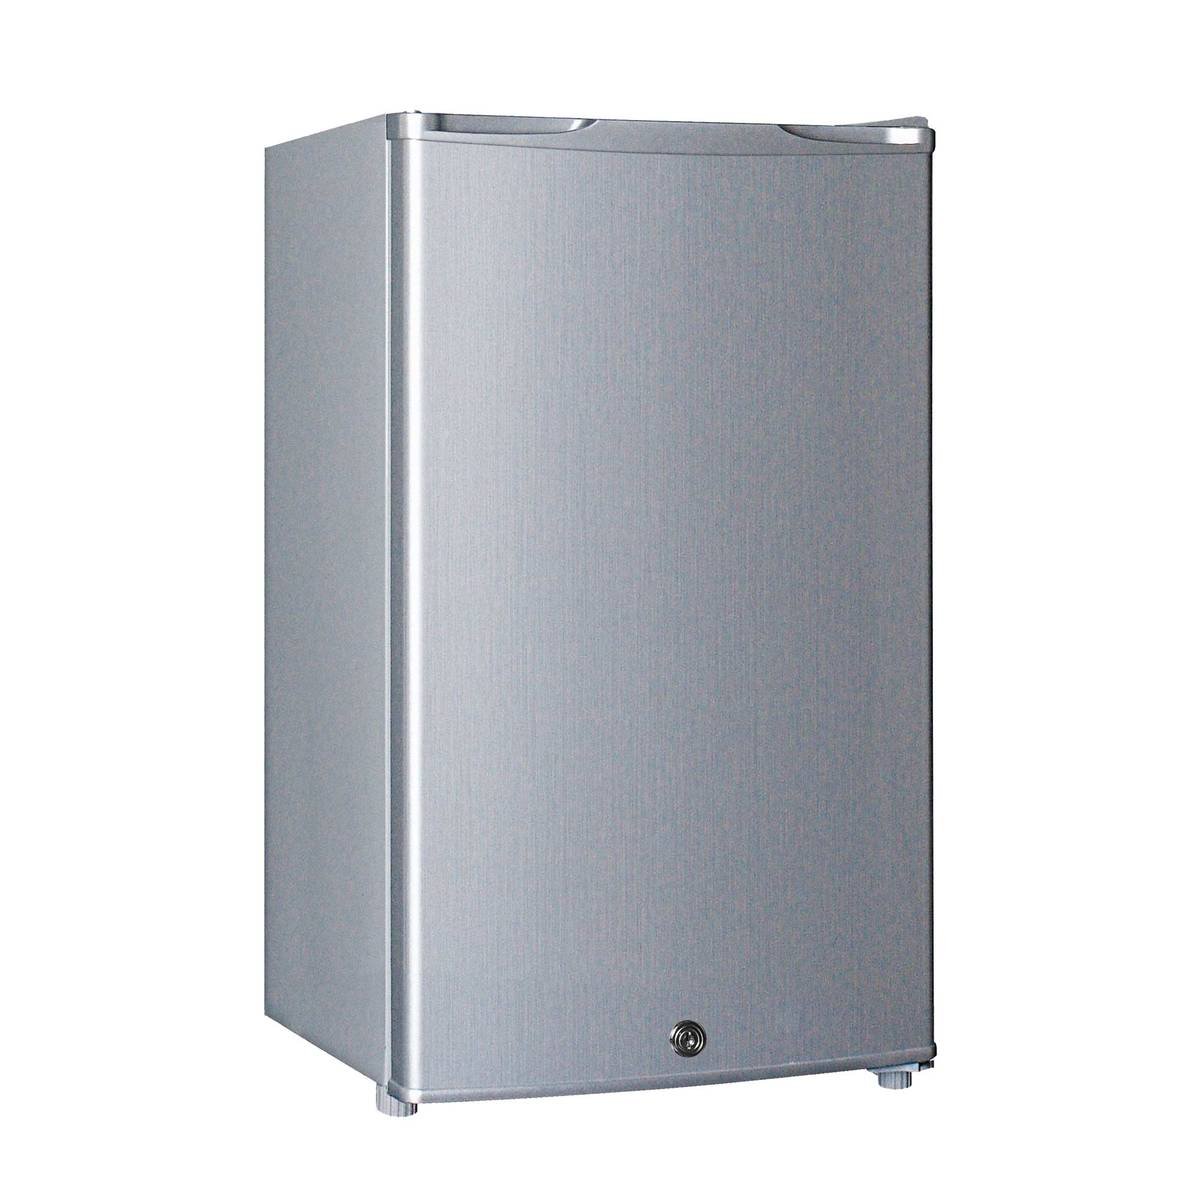 Ikon Single Door Refrigerator IK-95R 92Ltr